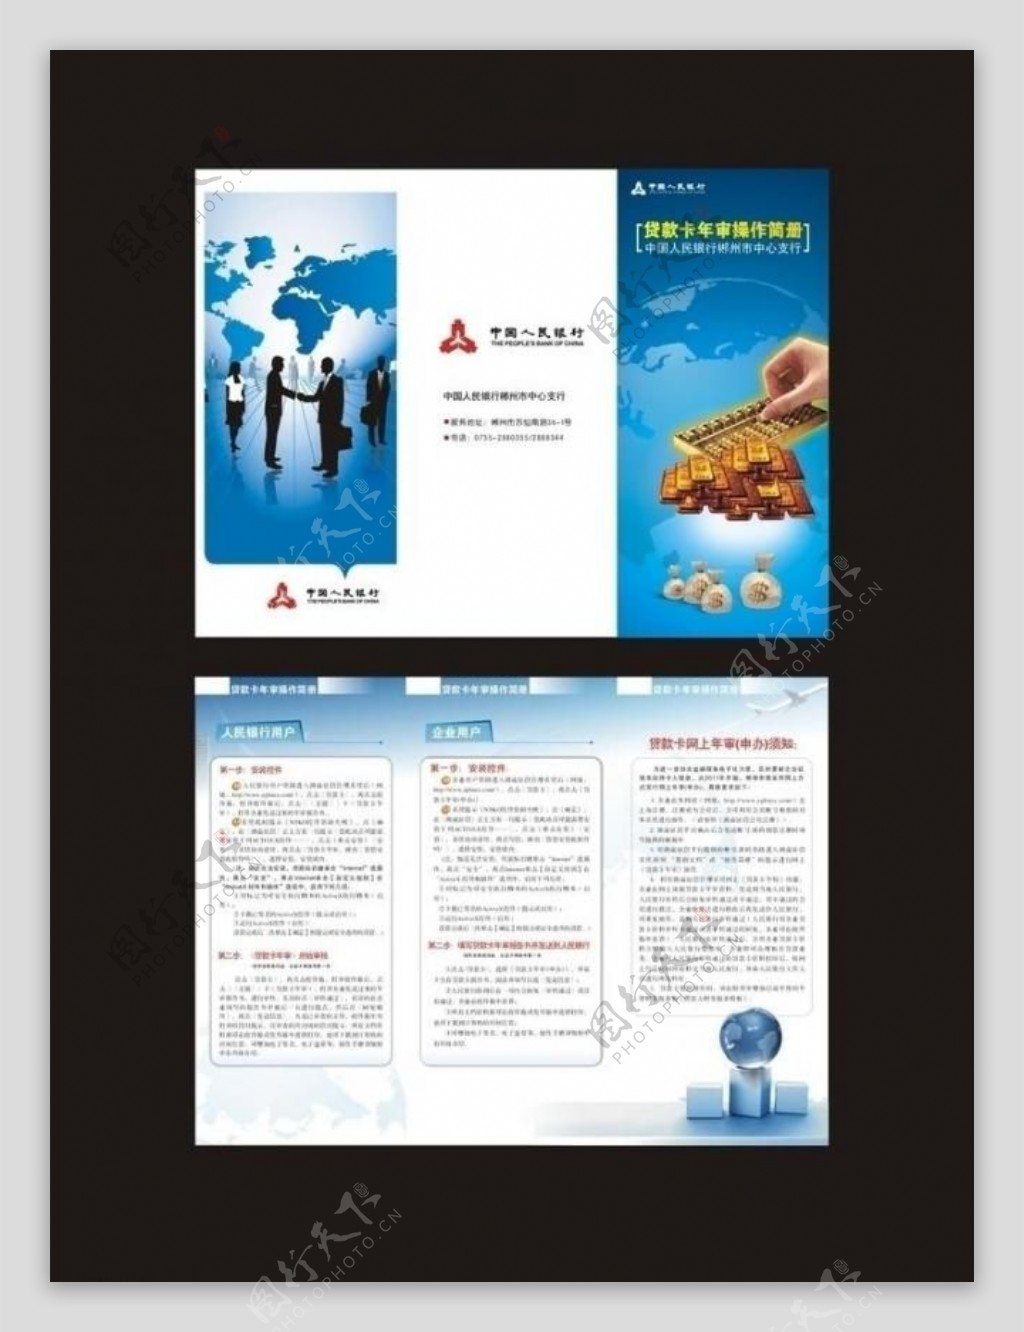 中国人民银行贷款卡年审操作简册图片